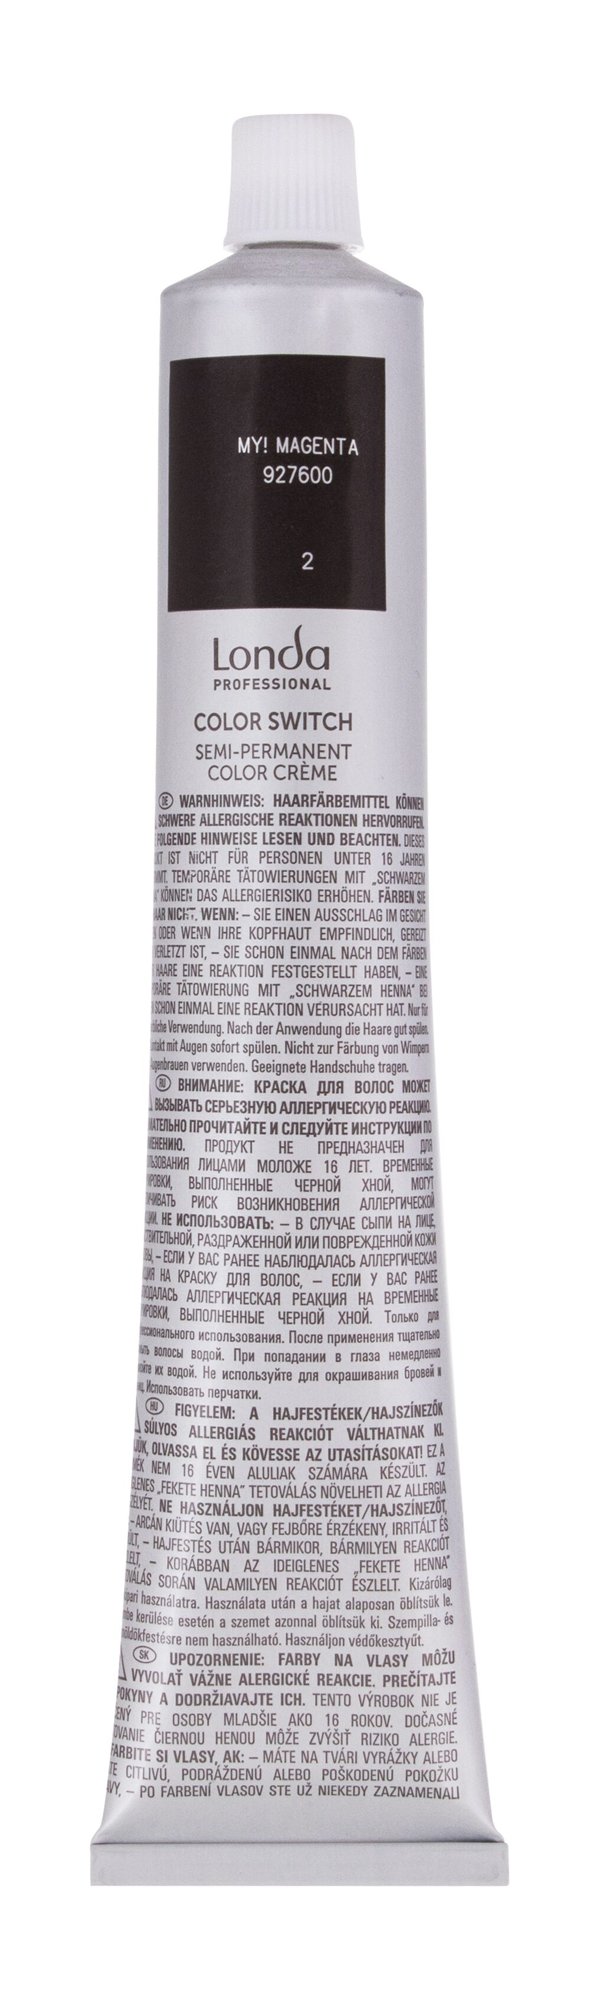 Londa Professional Semi-Permanent Color Color Switch plaukų dažai